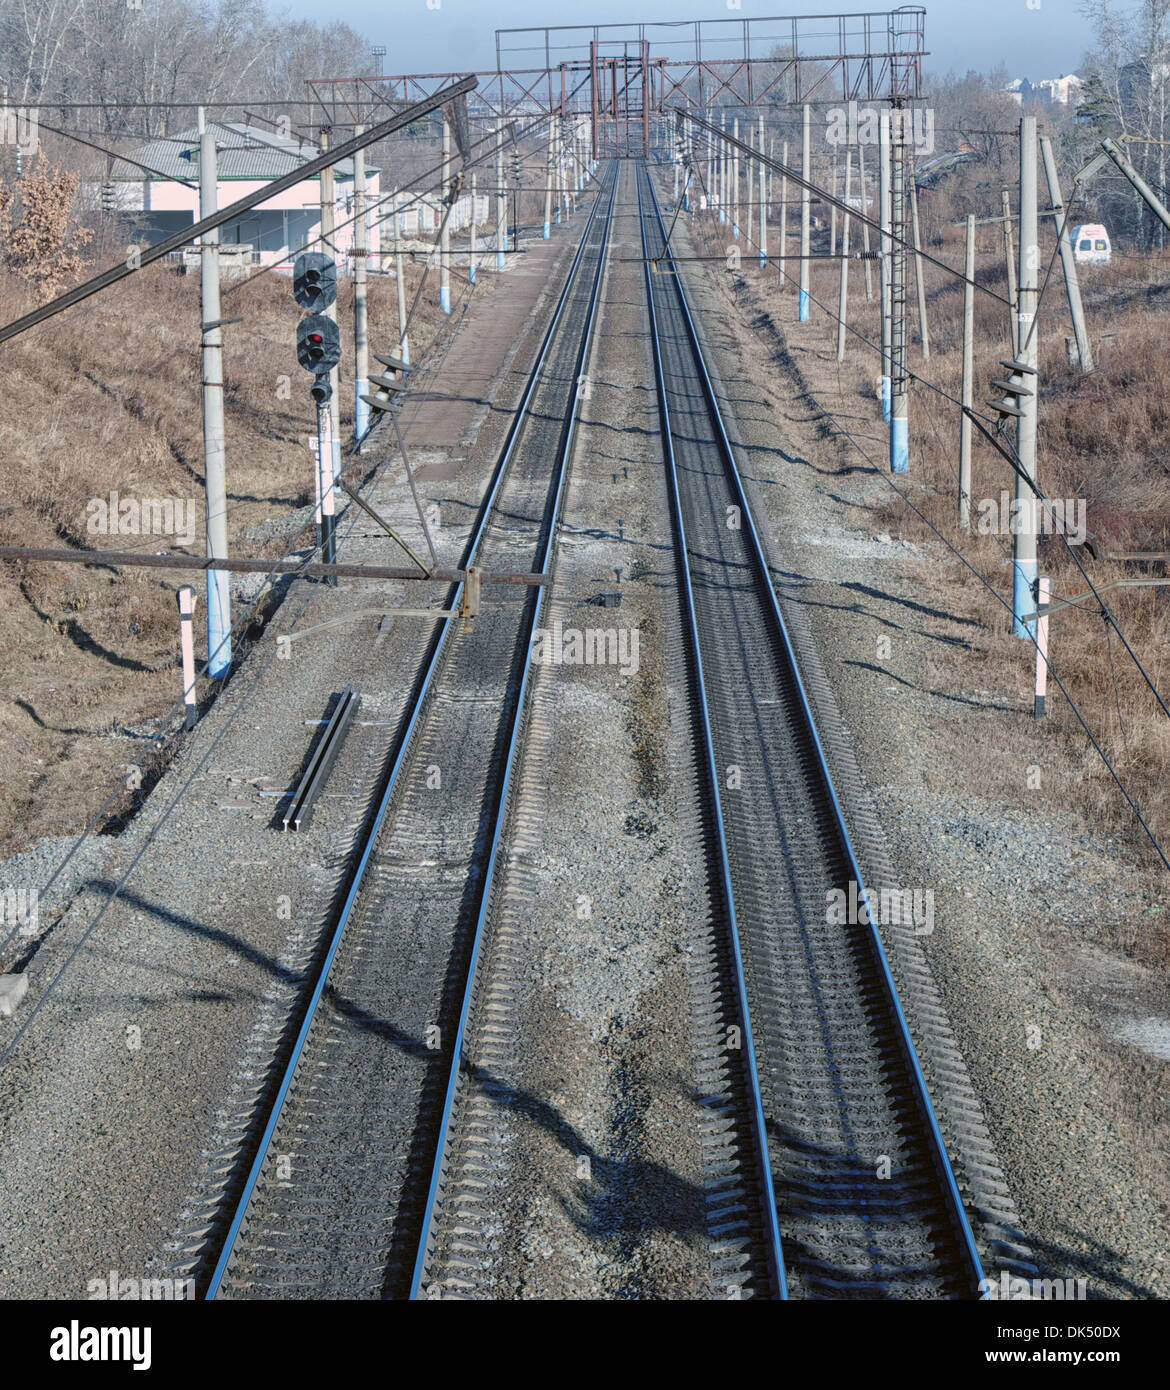 Metal ferrocarril vía con la vía cama 2 vías de ferrocarril con los soportes de la suspensión del hilo de contacto Foto de stock